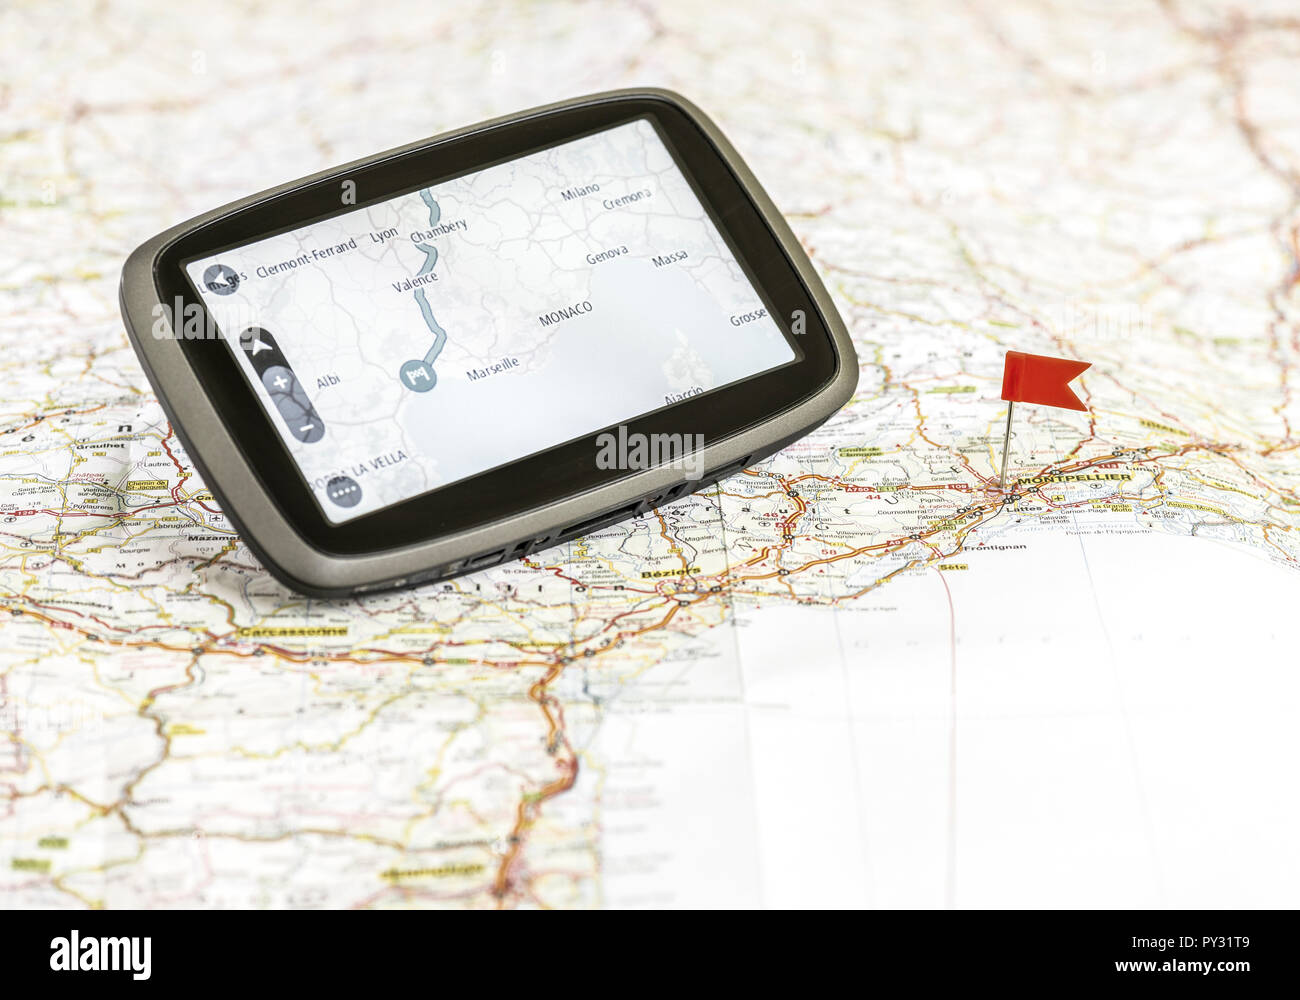 Navigationsgeraet auf einer Landkarte Stock Photo